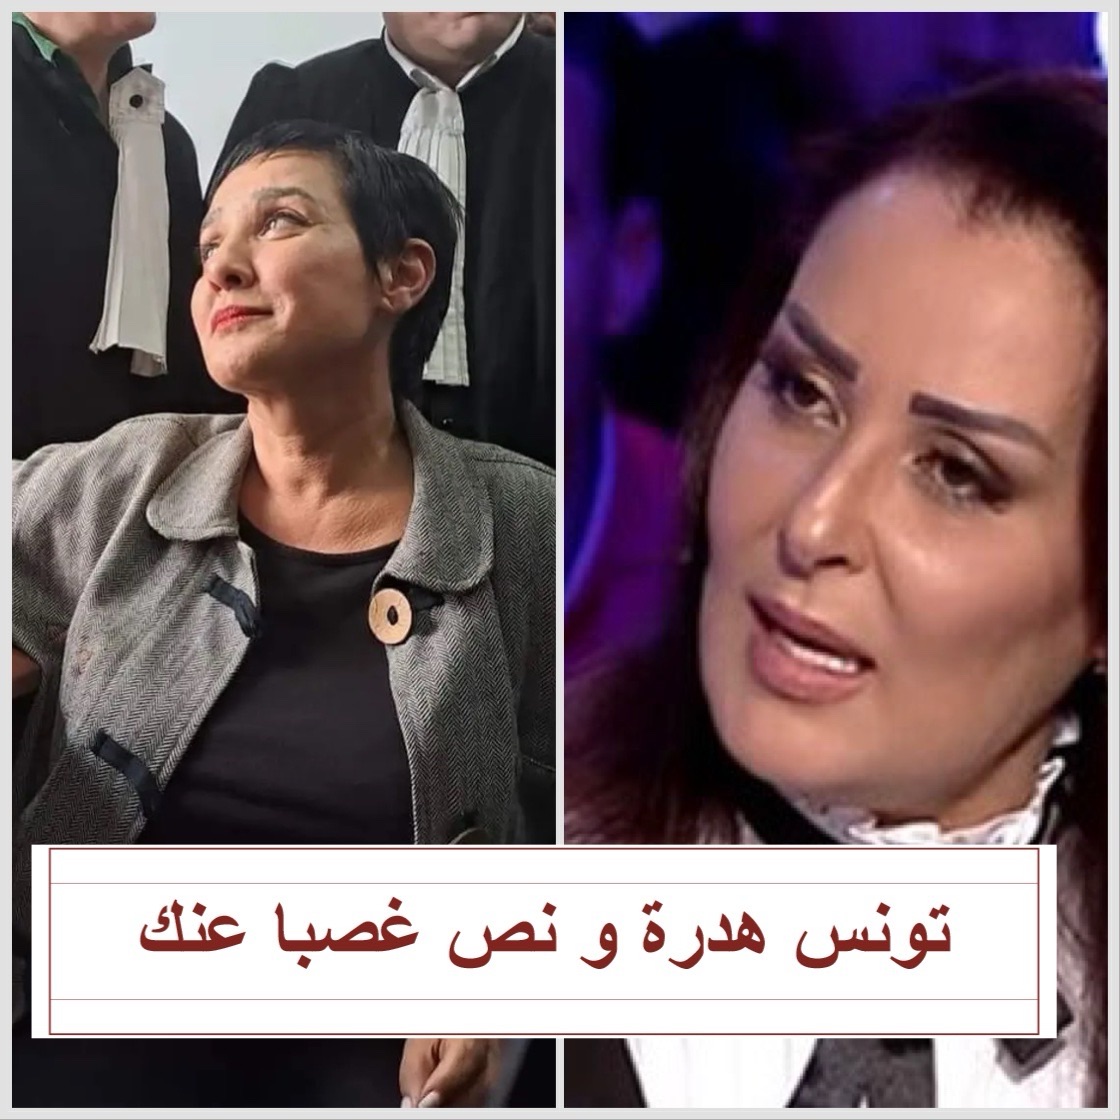 شاهد .. عربية حمادي لسنية الدهماني : « تونس هي الي خلاتك تكوني محامية ومادة وجهك في الإعلام » (فيديو)